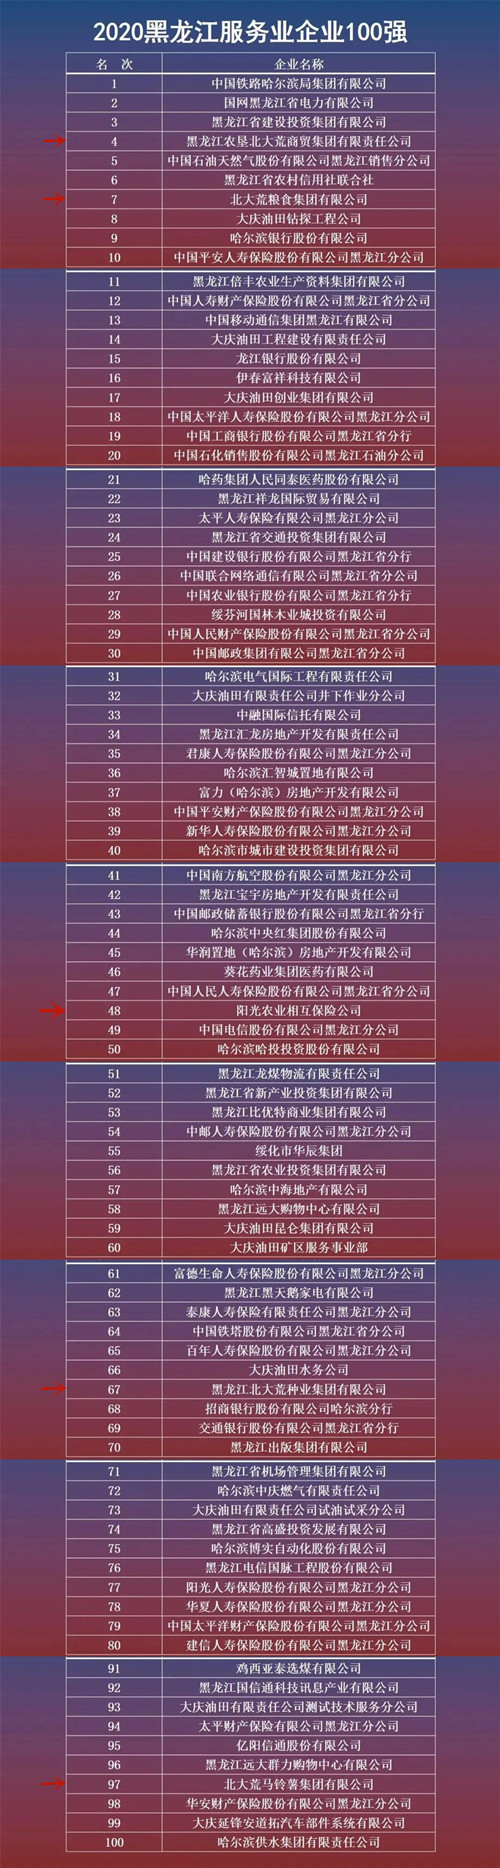 北大荒位列2020黑龙江企业100强排行榜第二名1_副1.jpg